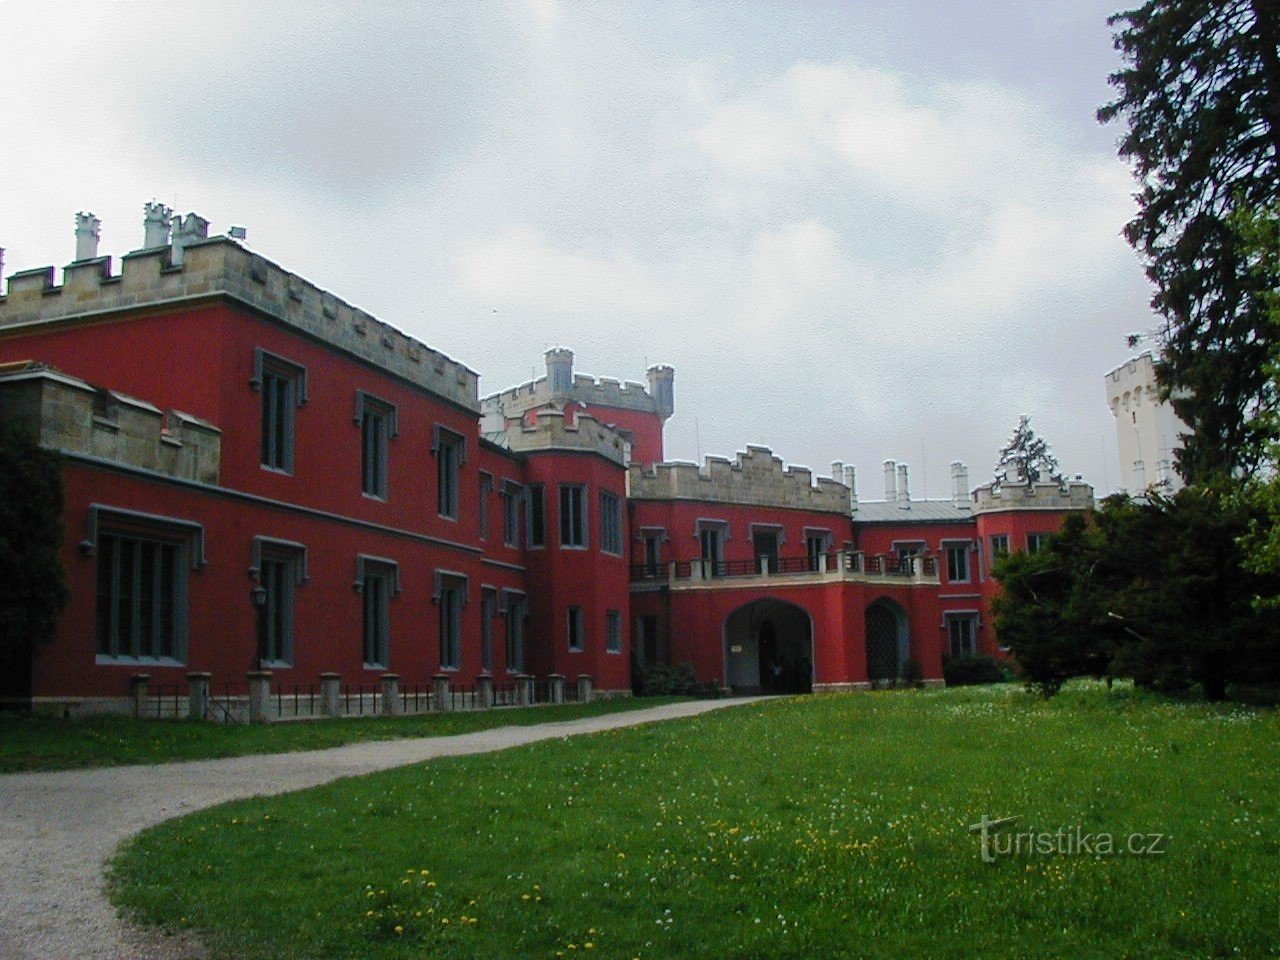 Κάστρο κοντά στο Nechanice